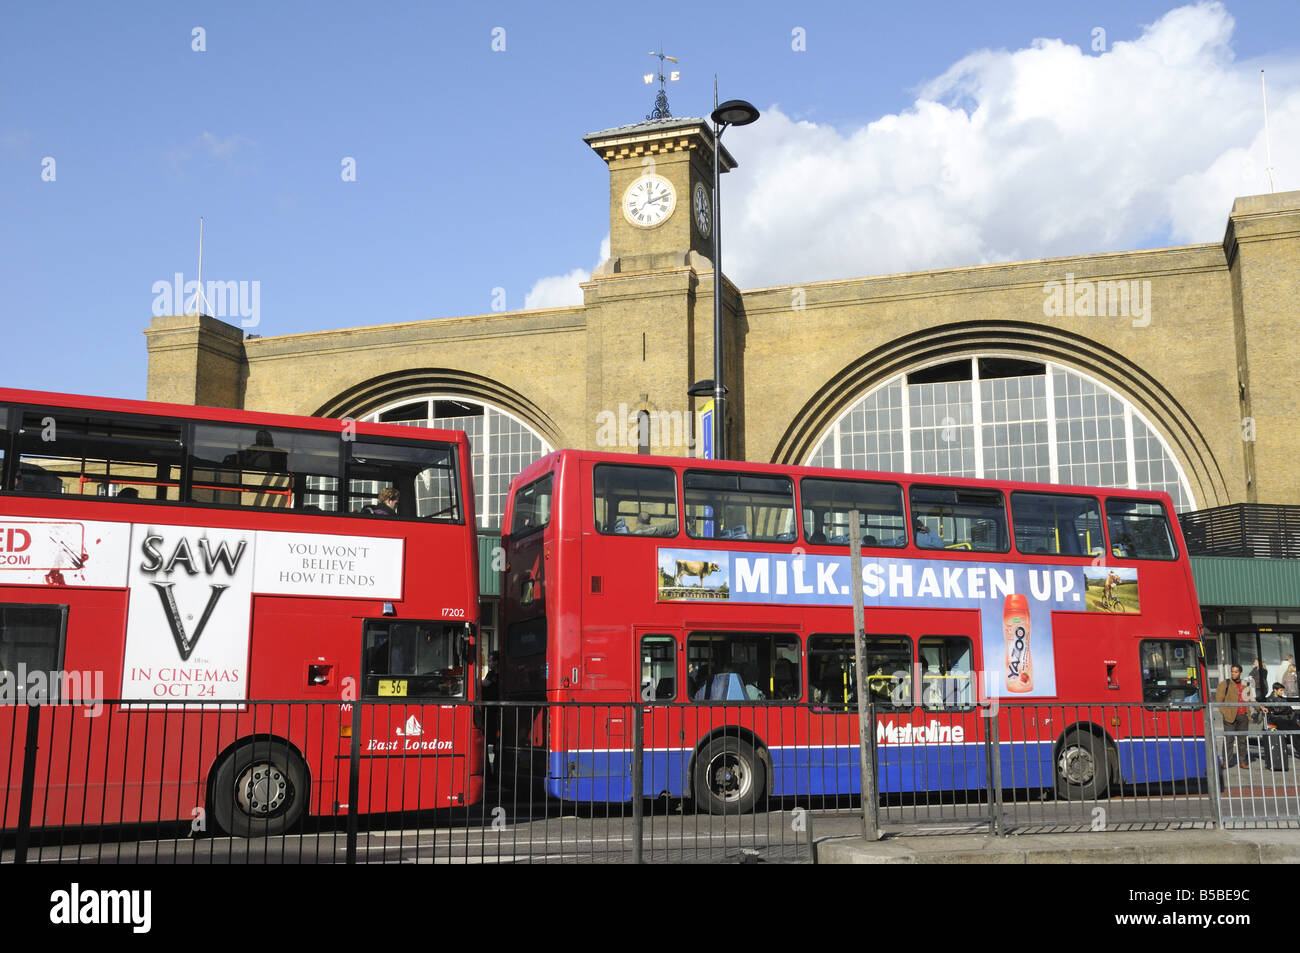 Les bus rouge en face de la gare de Kings Cross Euston Road, Camden, London England Angleterre UK Banque D'Images